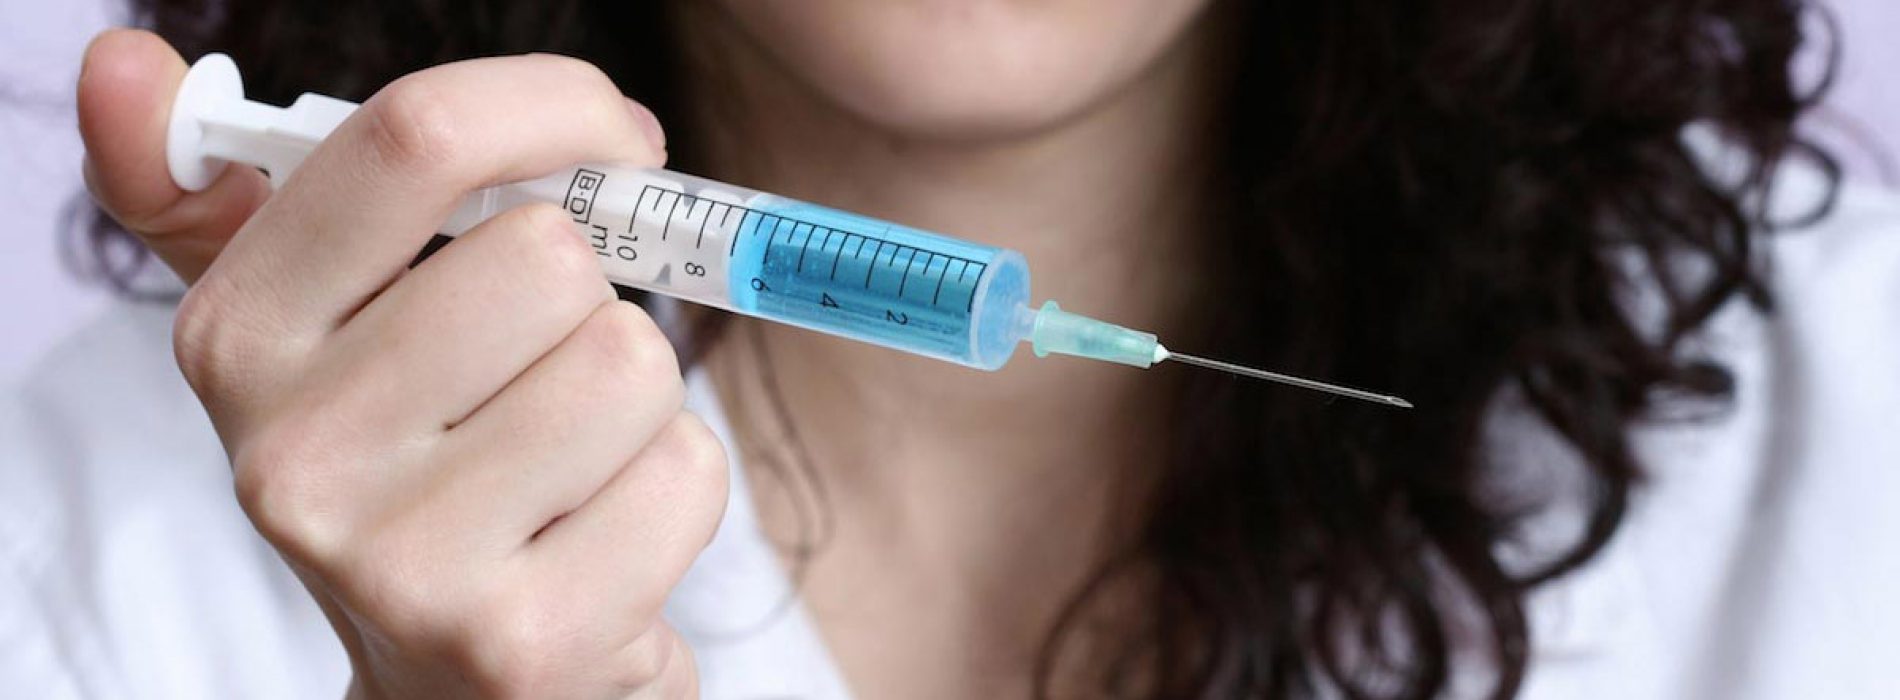 HPV-vaccins zijn gevaarlijk. Deze nieuwe documentaire toont het voor eens en altijd aan